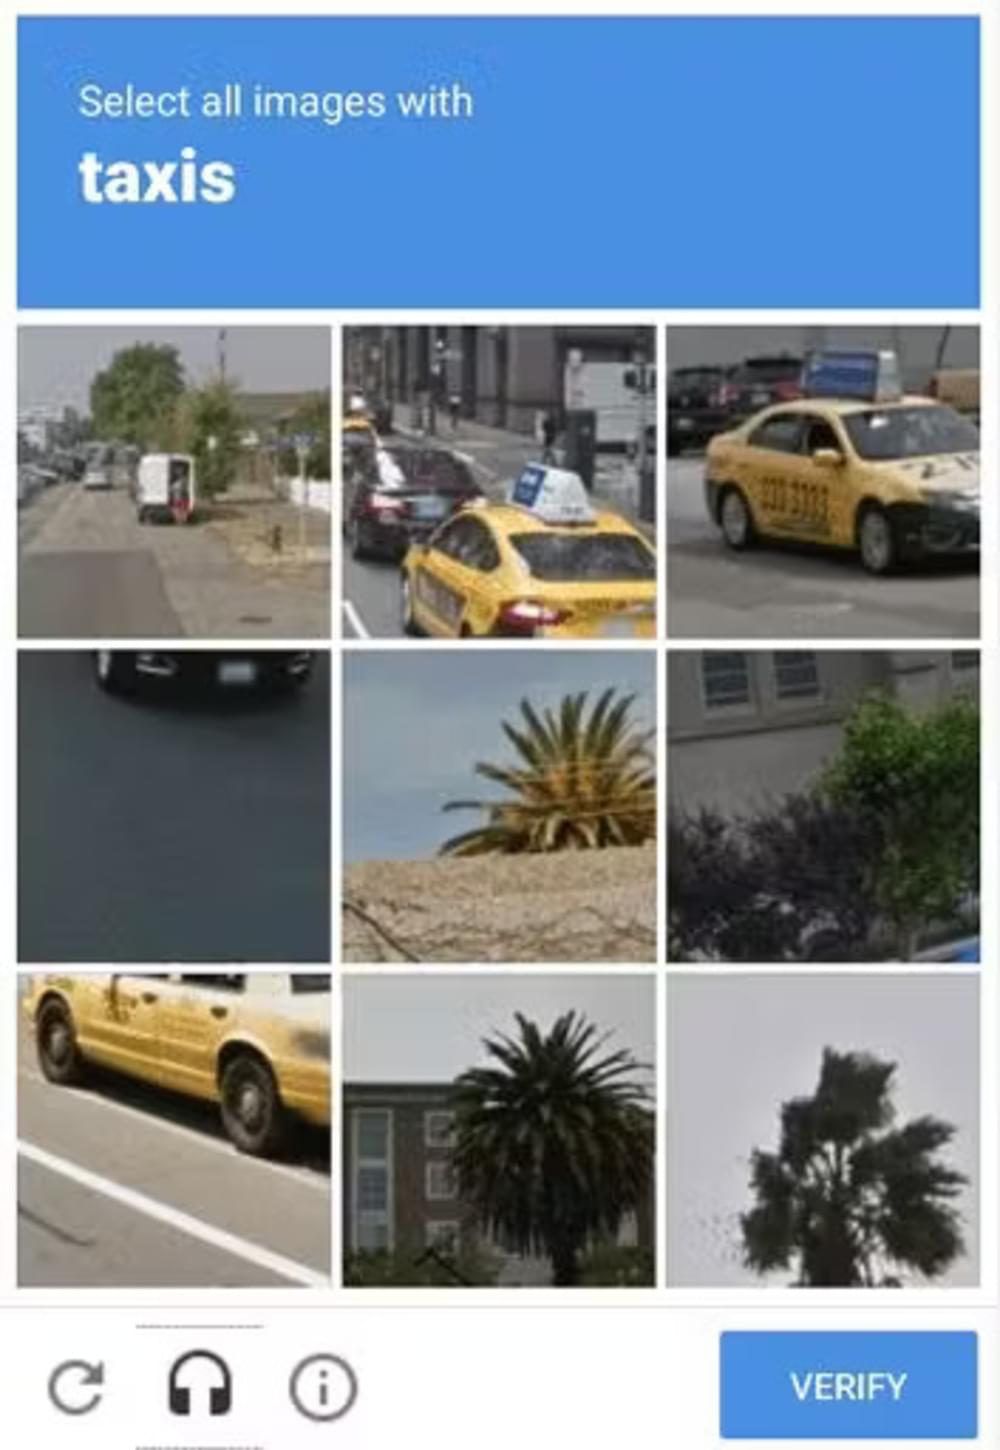 Image based CAPTCHAs